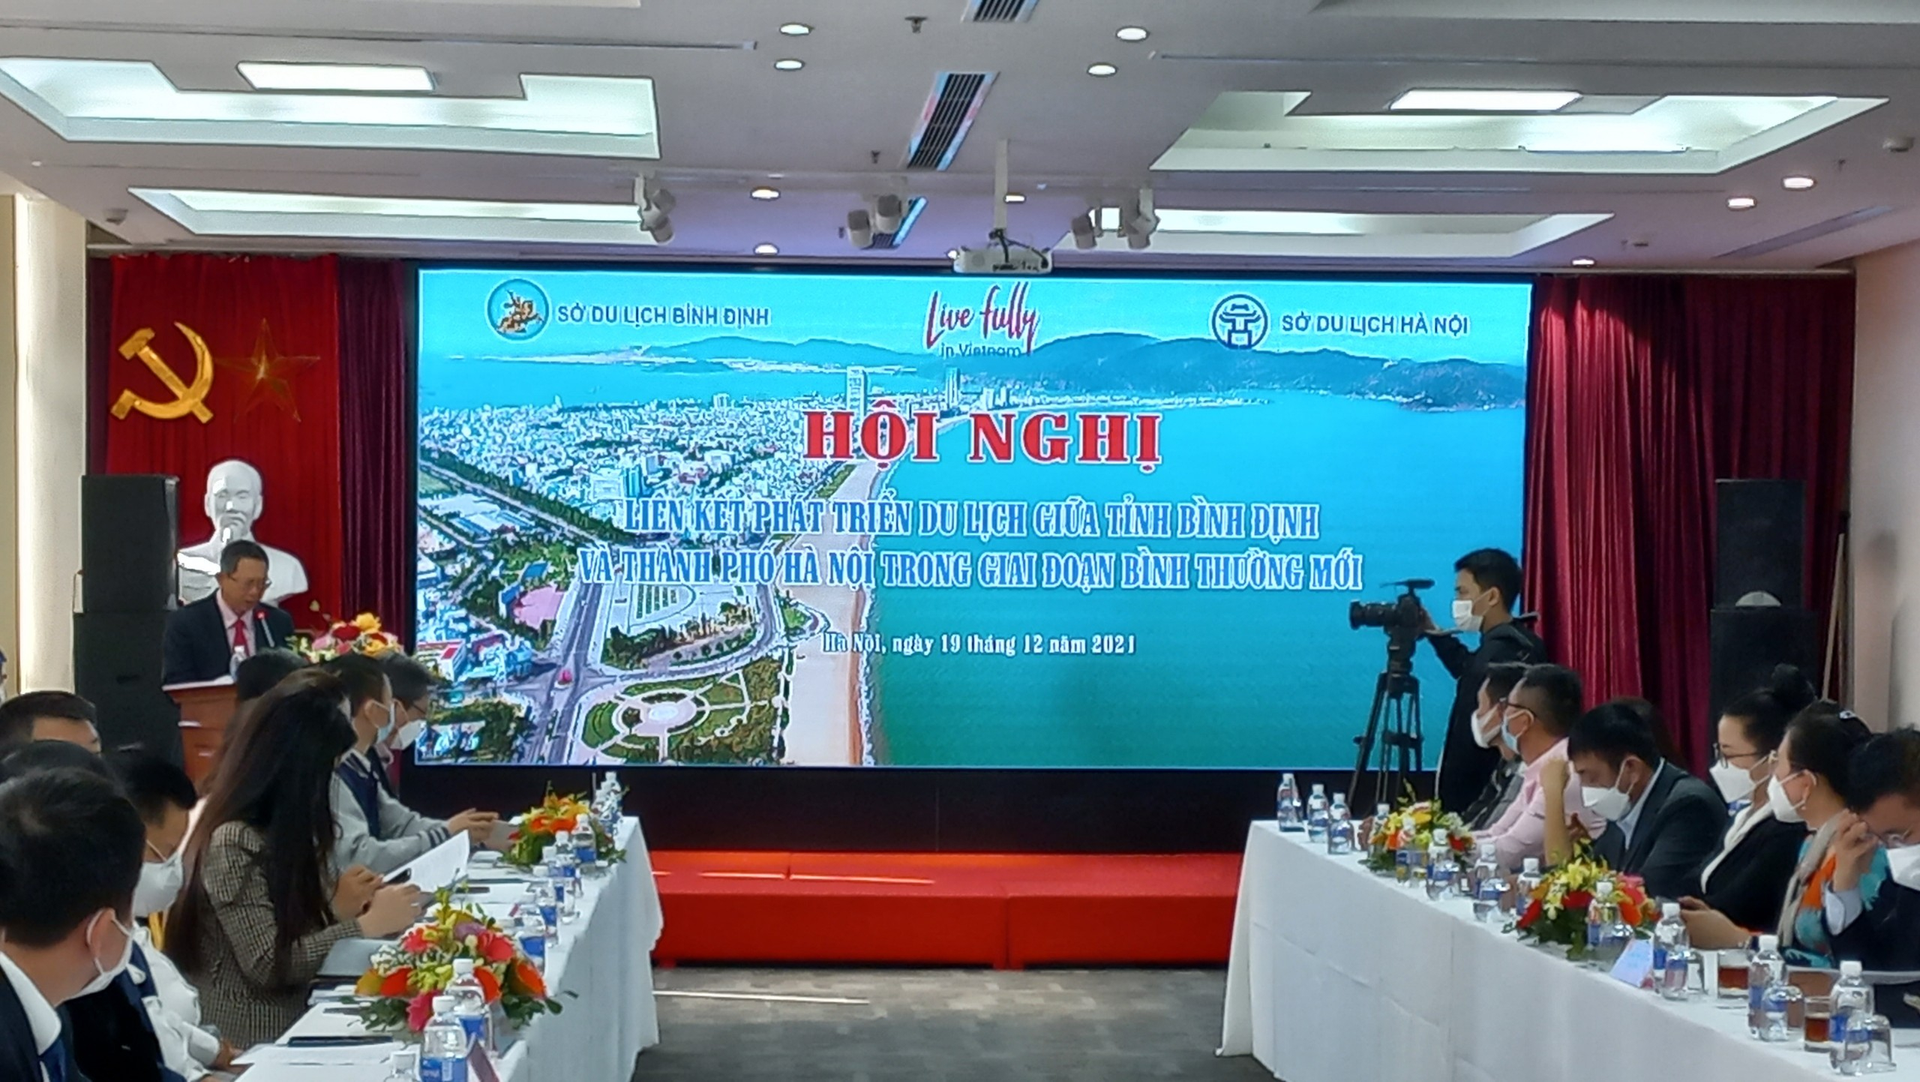 Hà Nội - Bình Định: Liên kết phát triển du lịch trong giai đoạn bình thường mới